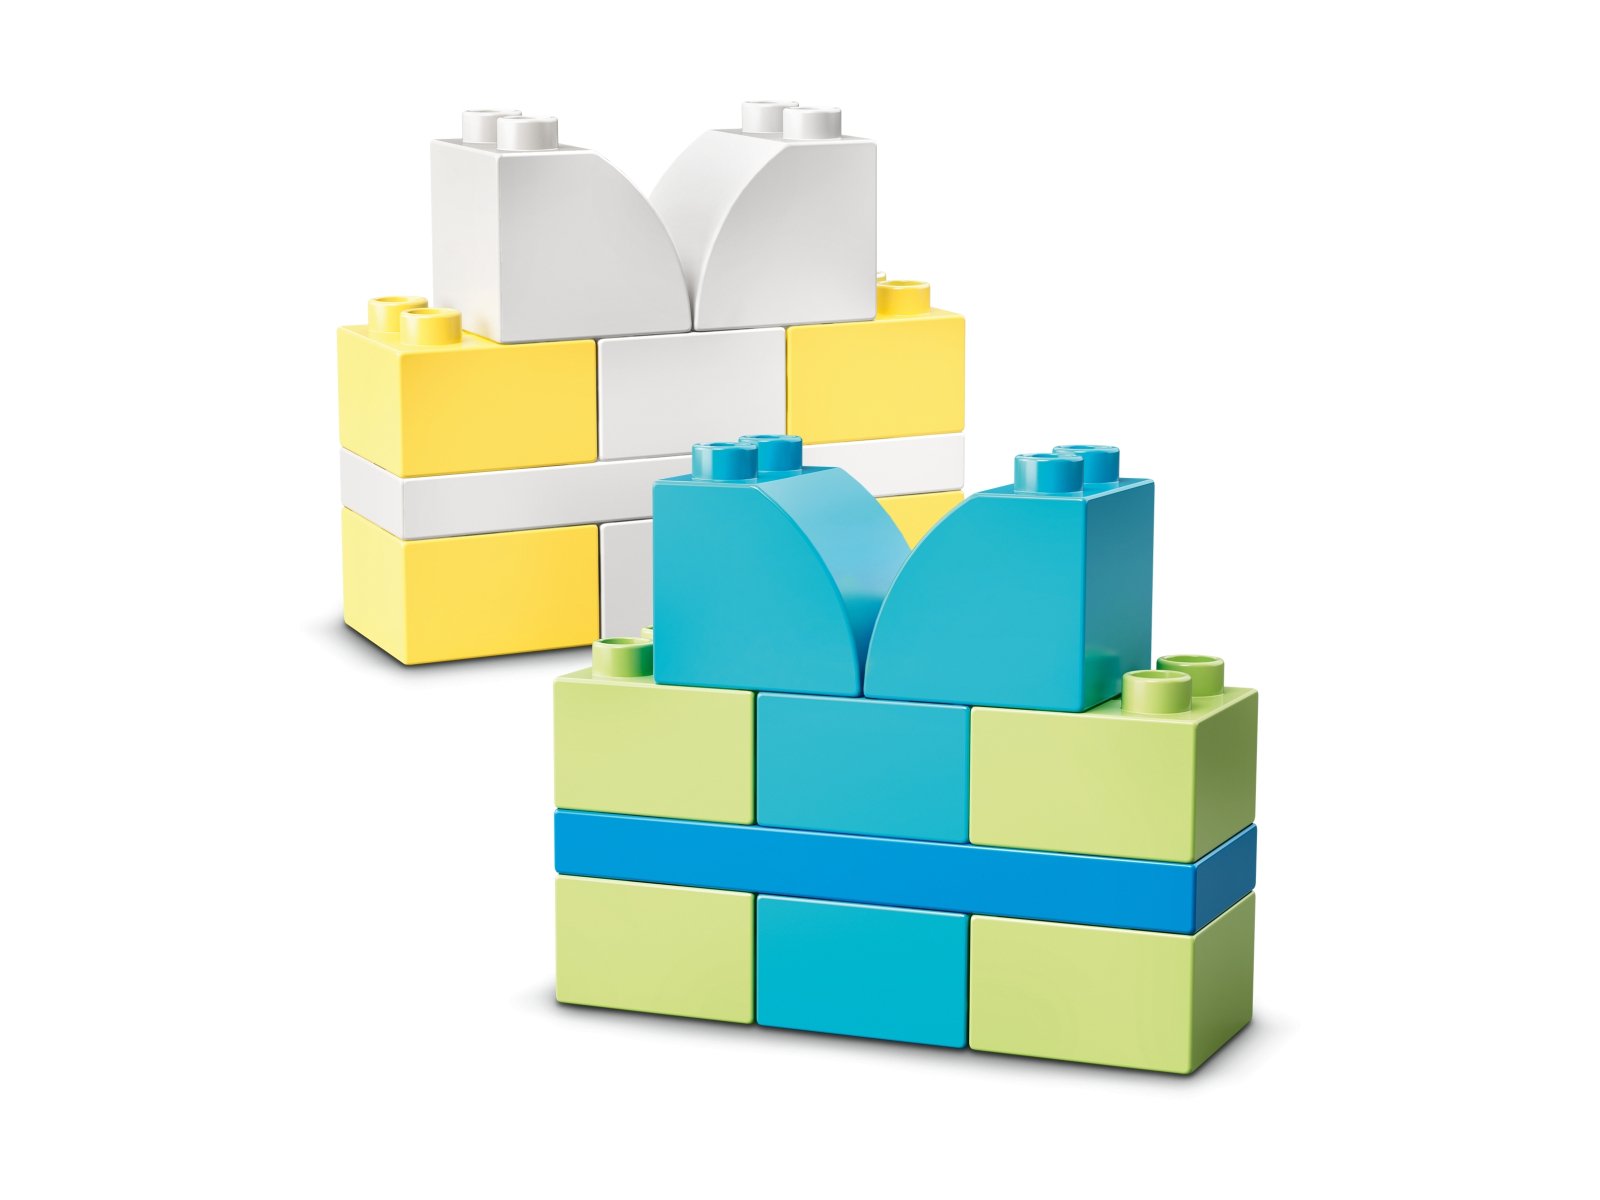 LEGO Duplo 10958 Kreatywne przyjęcie urodzinowe